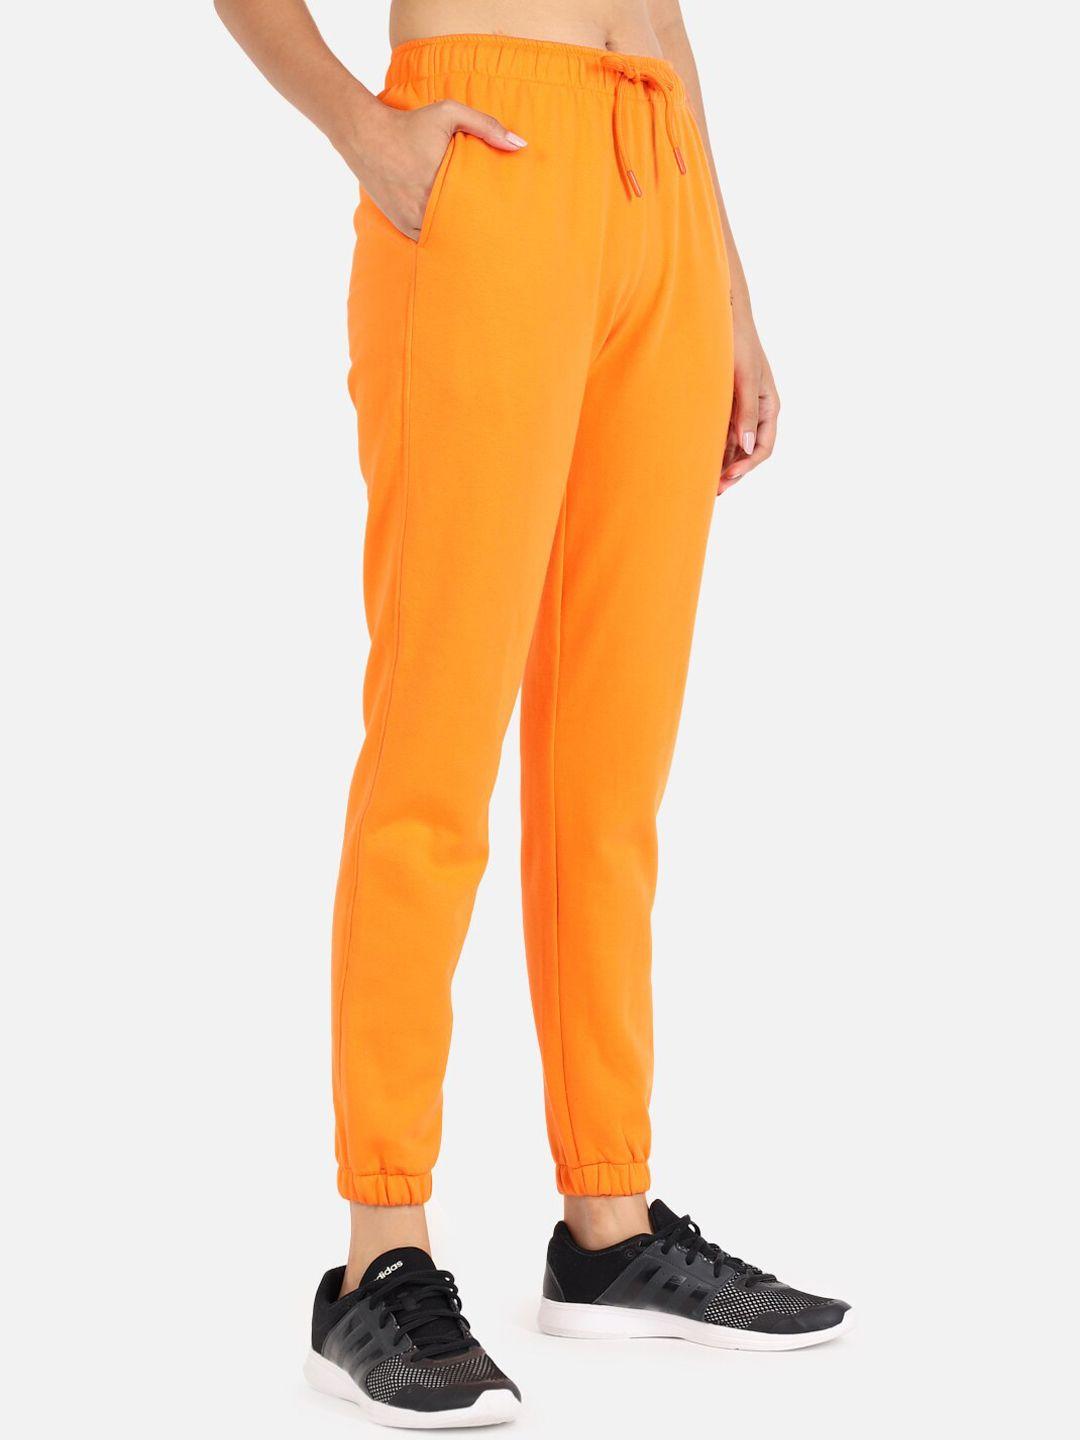 griffel-women-orange-solid-cotton-jogger